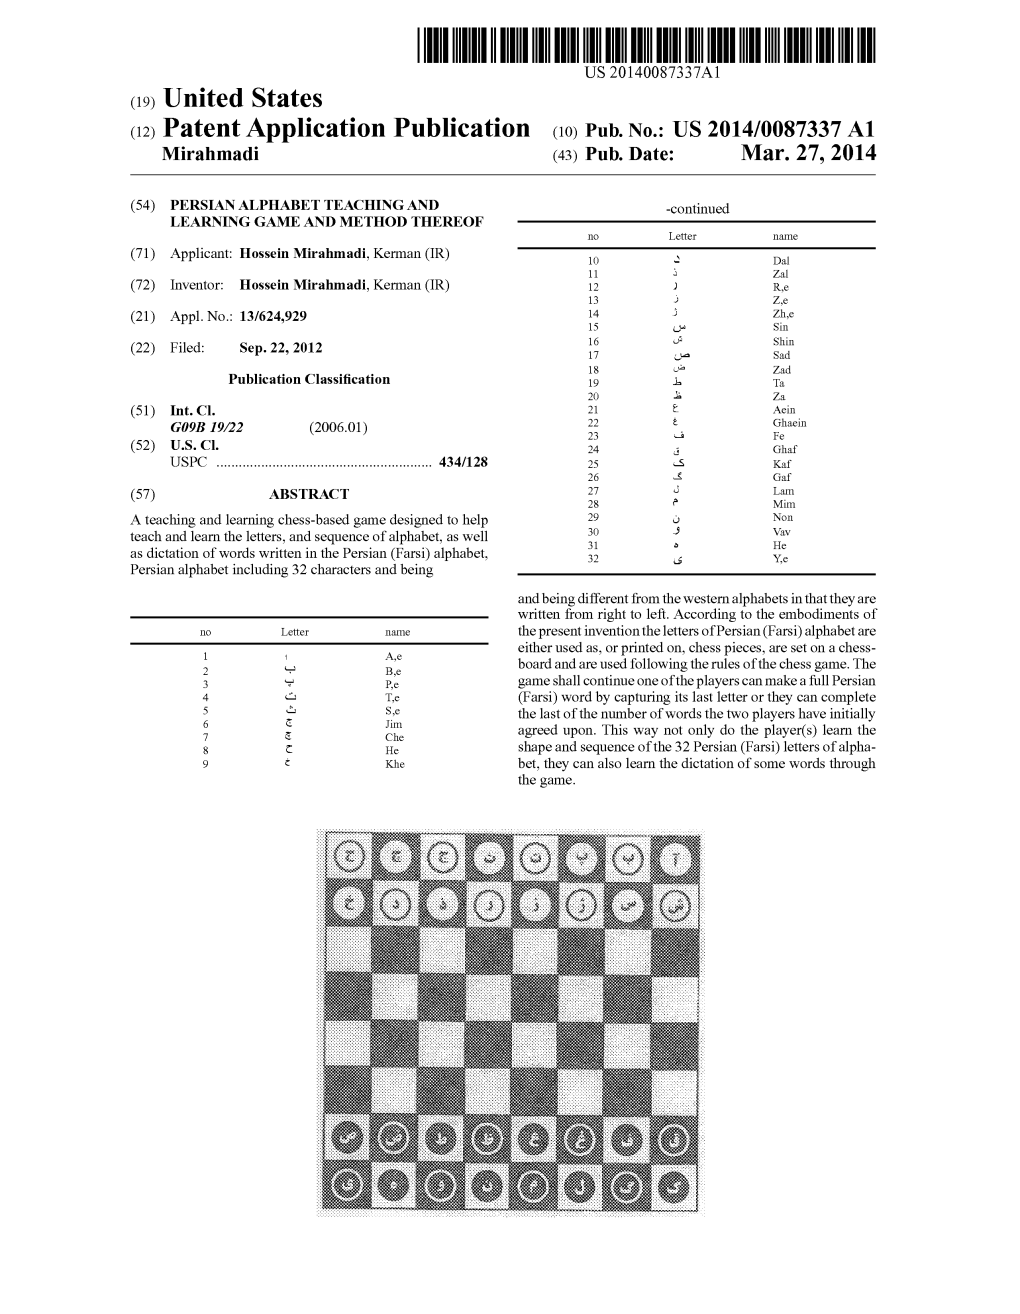 Patent Application Publication (10) Pub. No.: US 2014/0087337 A1 Mirahmadi (43) Pub